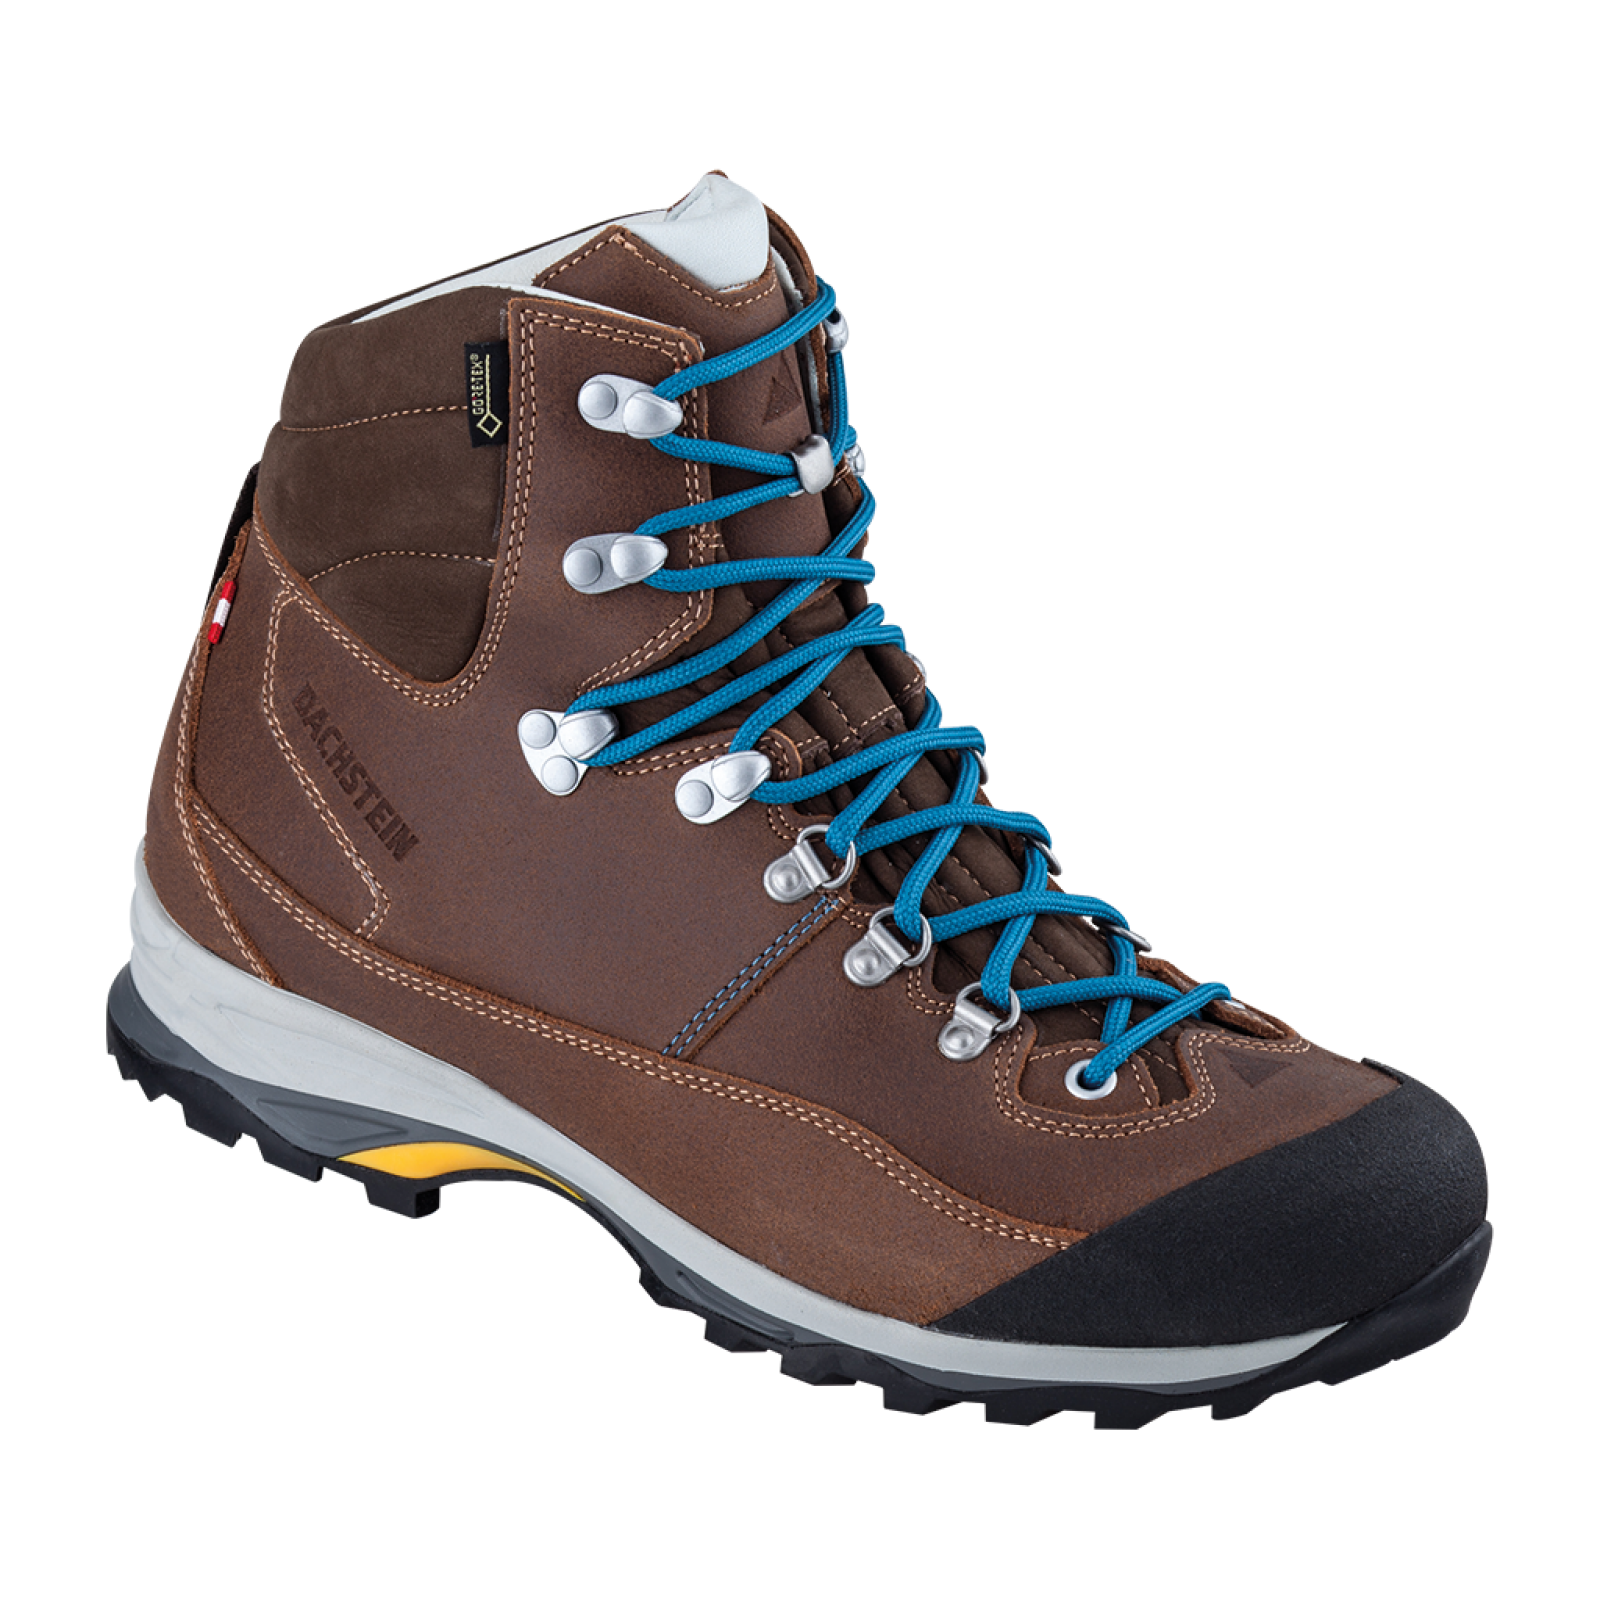 Dachstein Ramsau 2.0 GTX - Hiking Boots - Men's